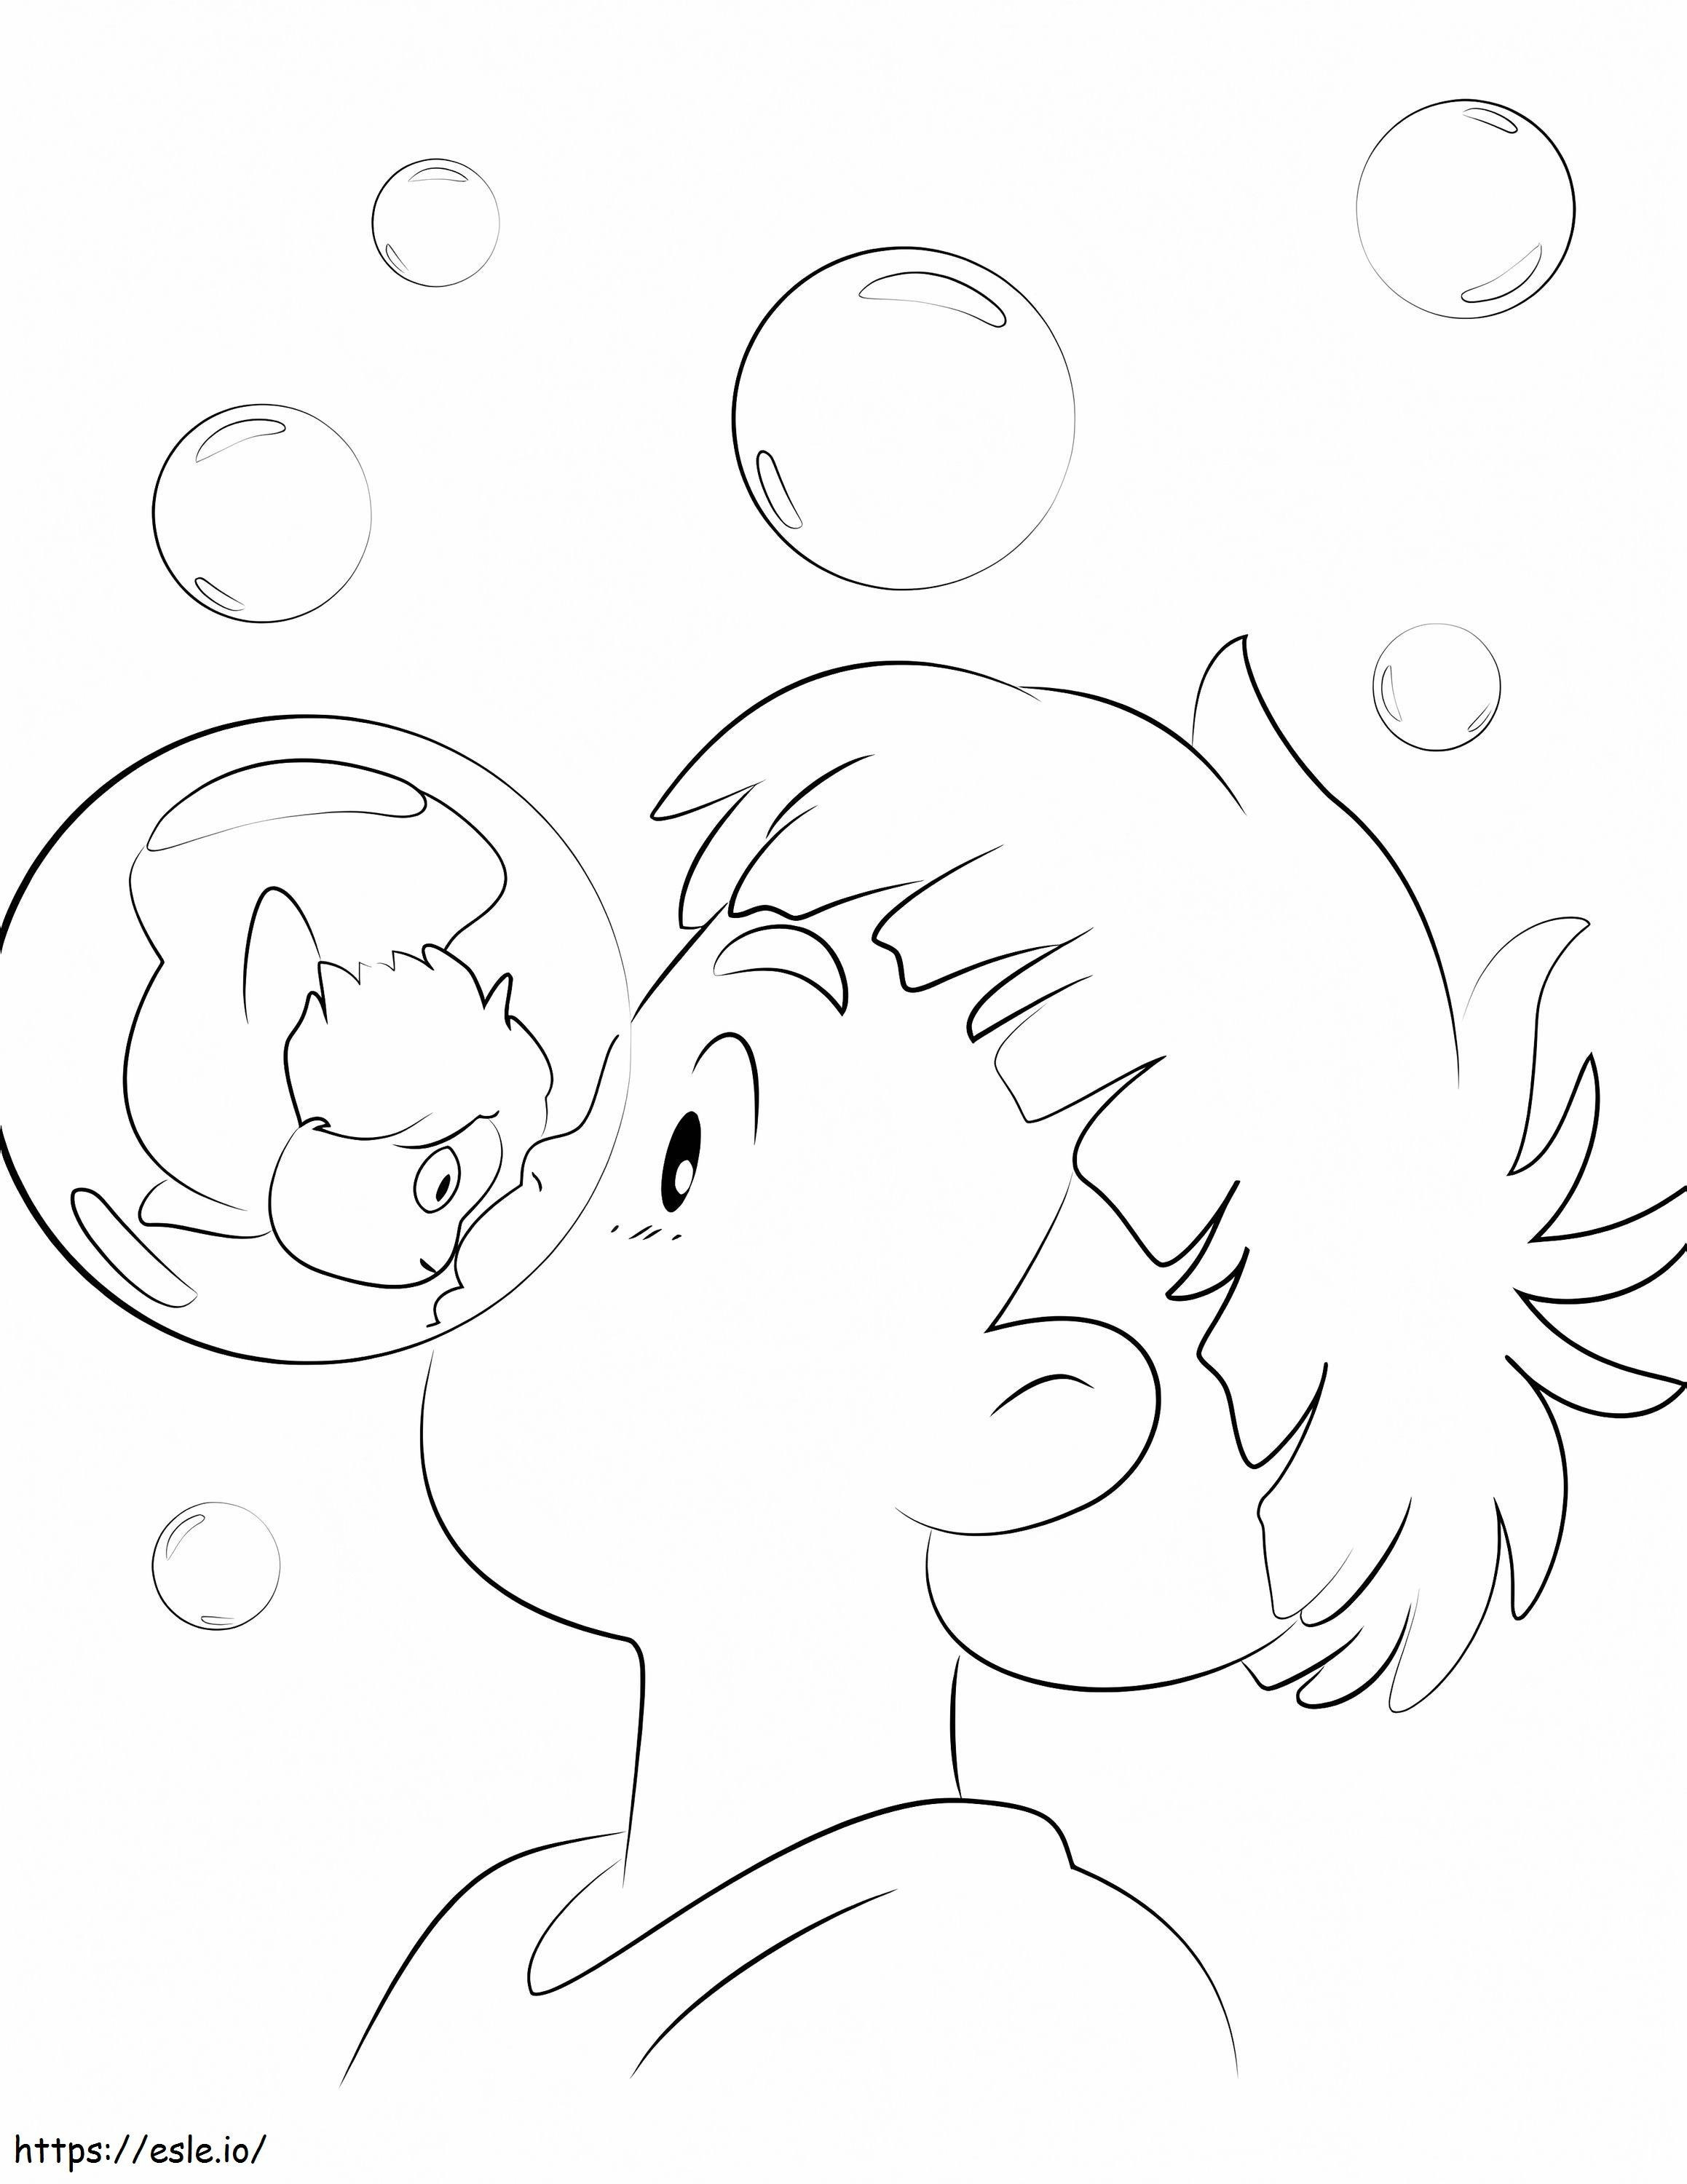 Sosuke And Ponyo 1 coloring page